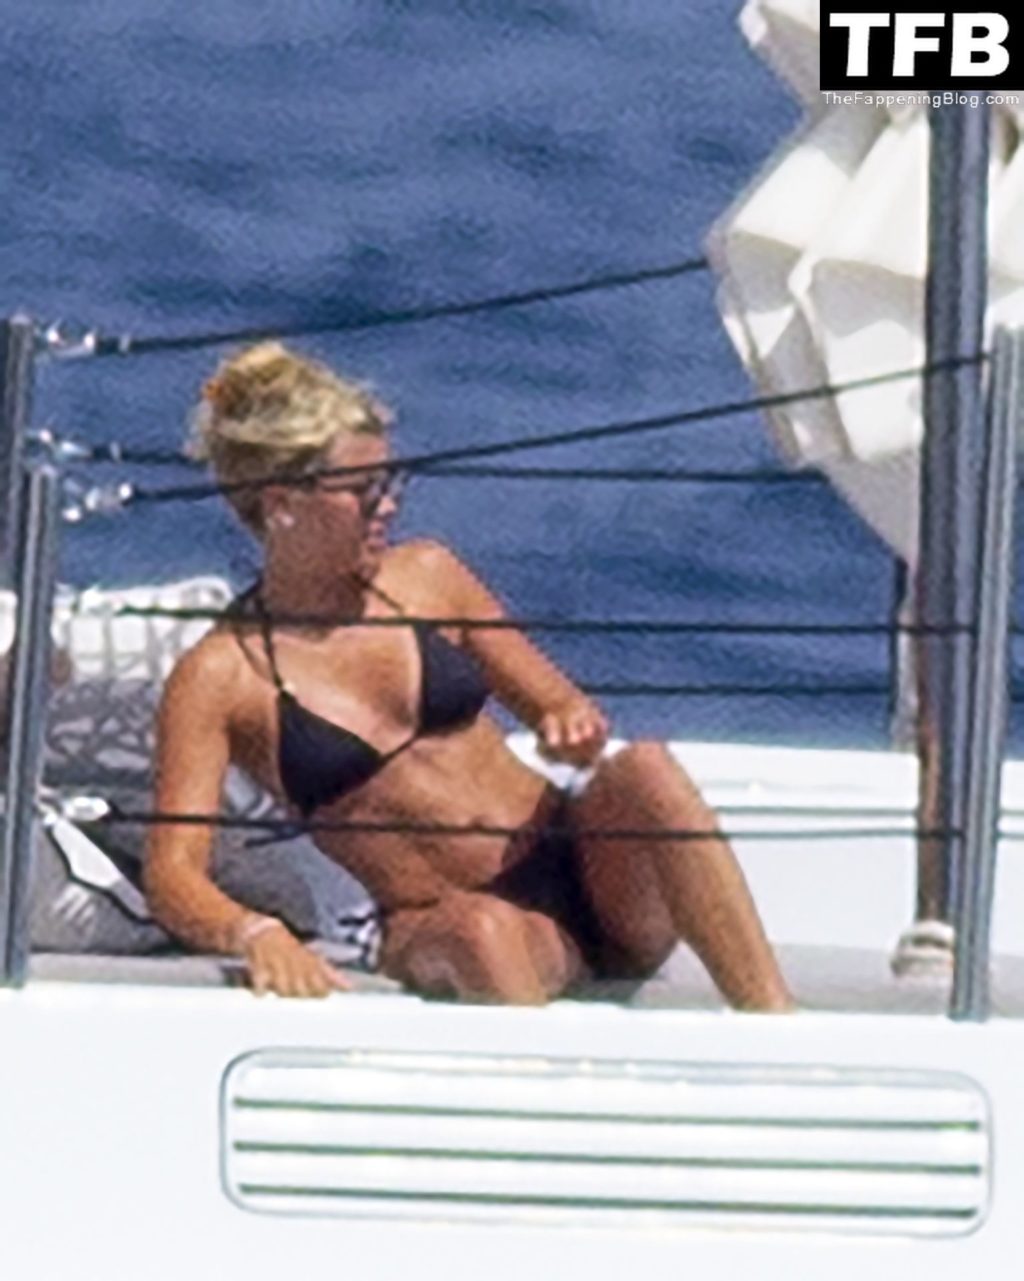 Sofia Richie Displays Her Sexy Bikini Body on a Luxury Yacht in Ibiza (44 Photos)